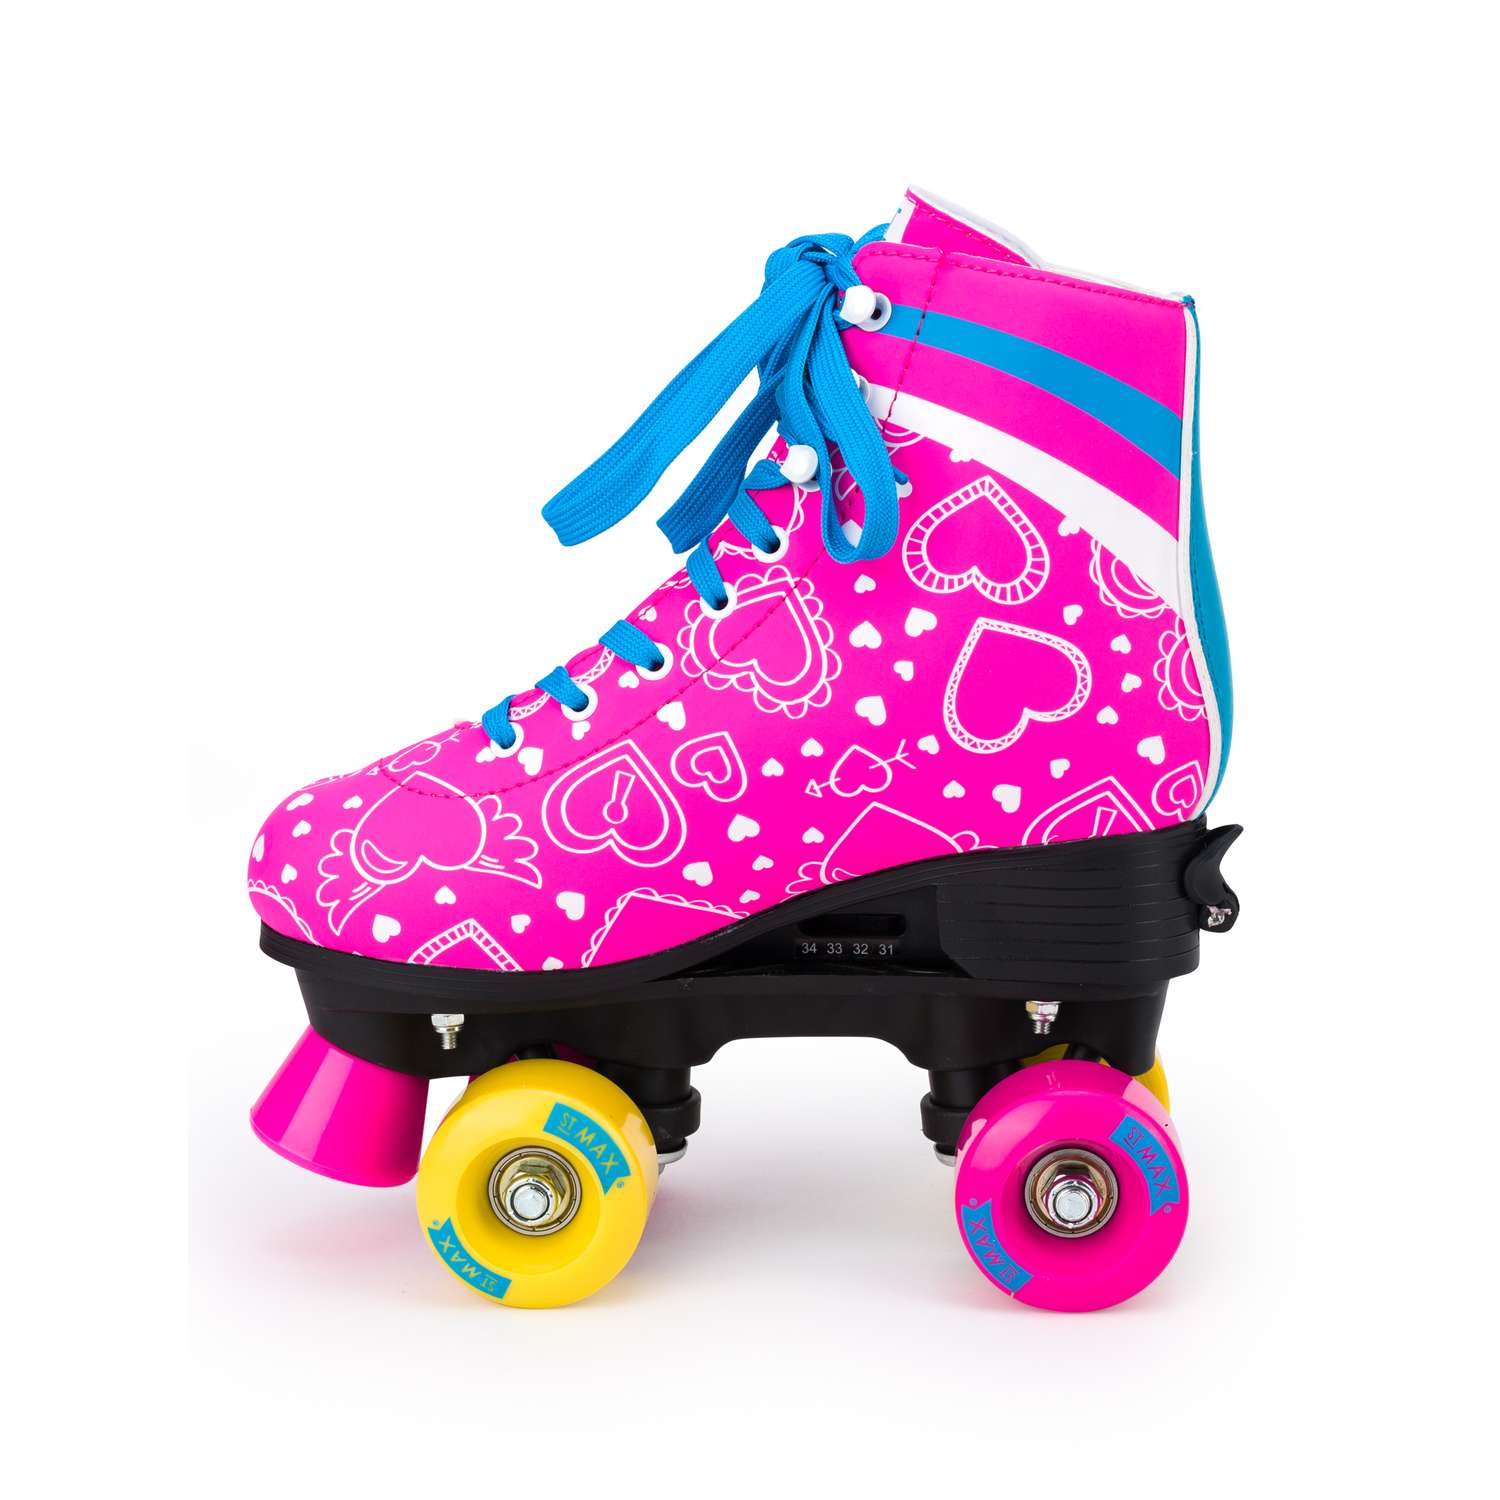 Роликовые коньки SXRide Roller skate YXSKT04BLPN36 цвет розовые с белыми сердечкам размер 36 - фото 6